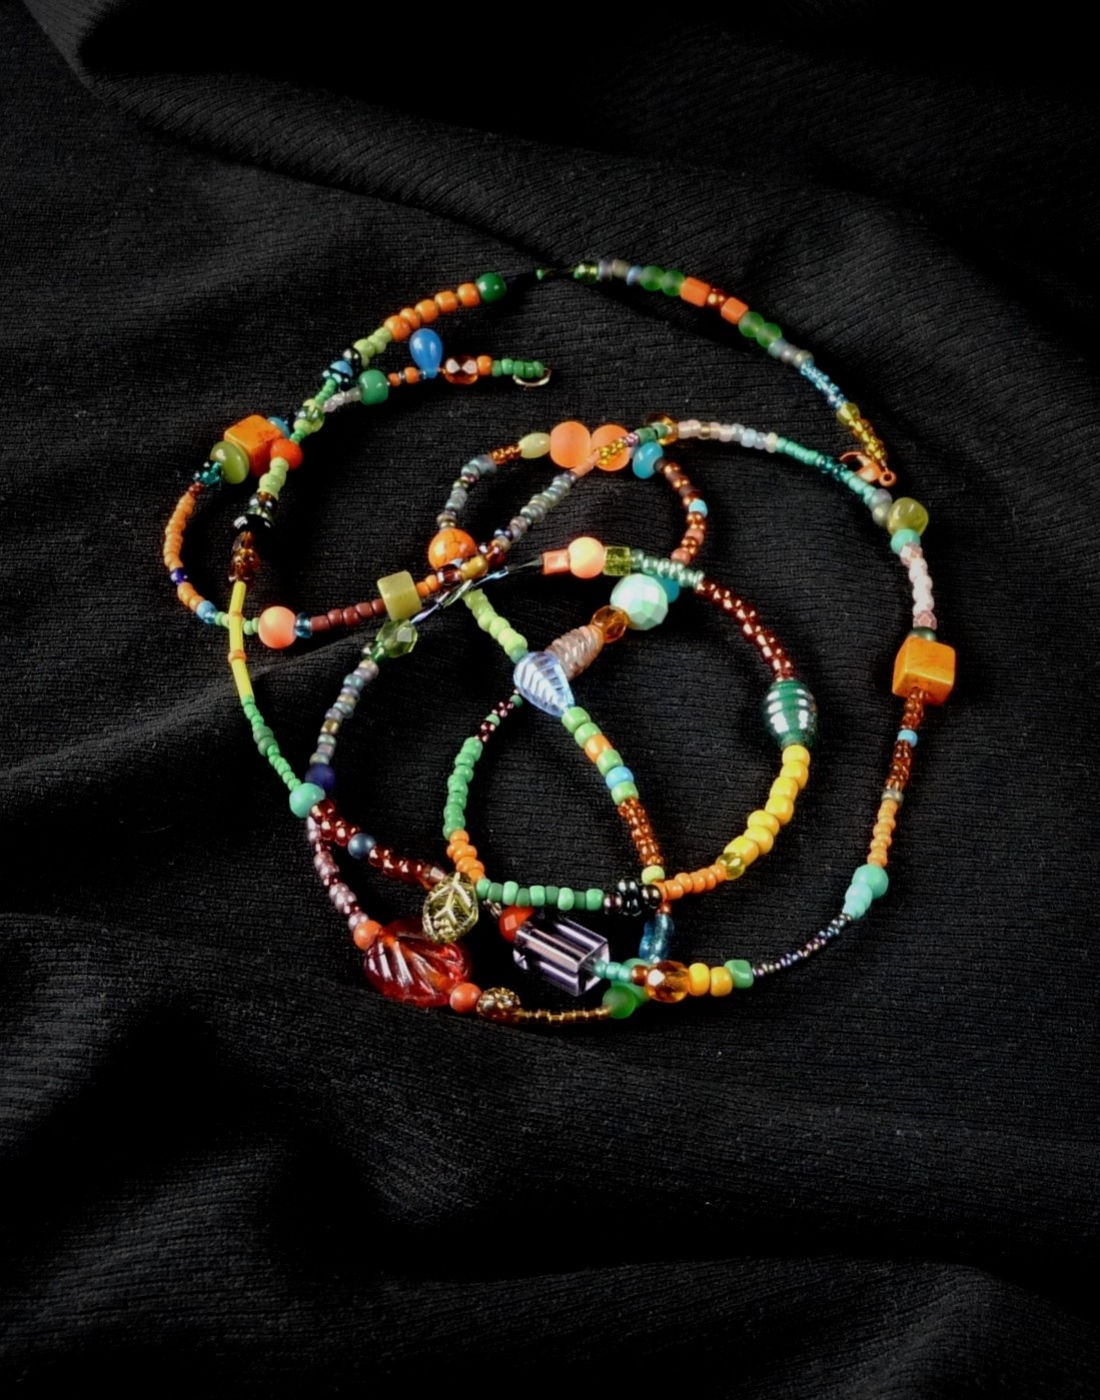 naszyjnik w modnym stylu Boho z drobnych koralików (seed beads) i dopasowanych kolorystycznie przeróżnych minerałów i szkła